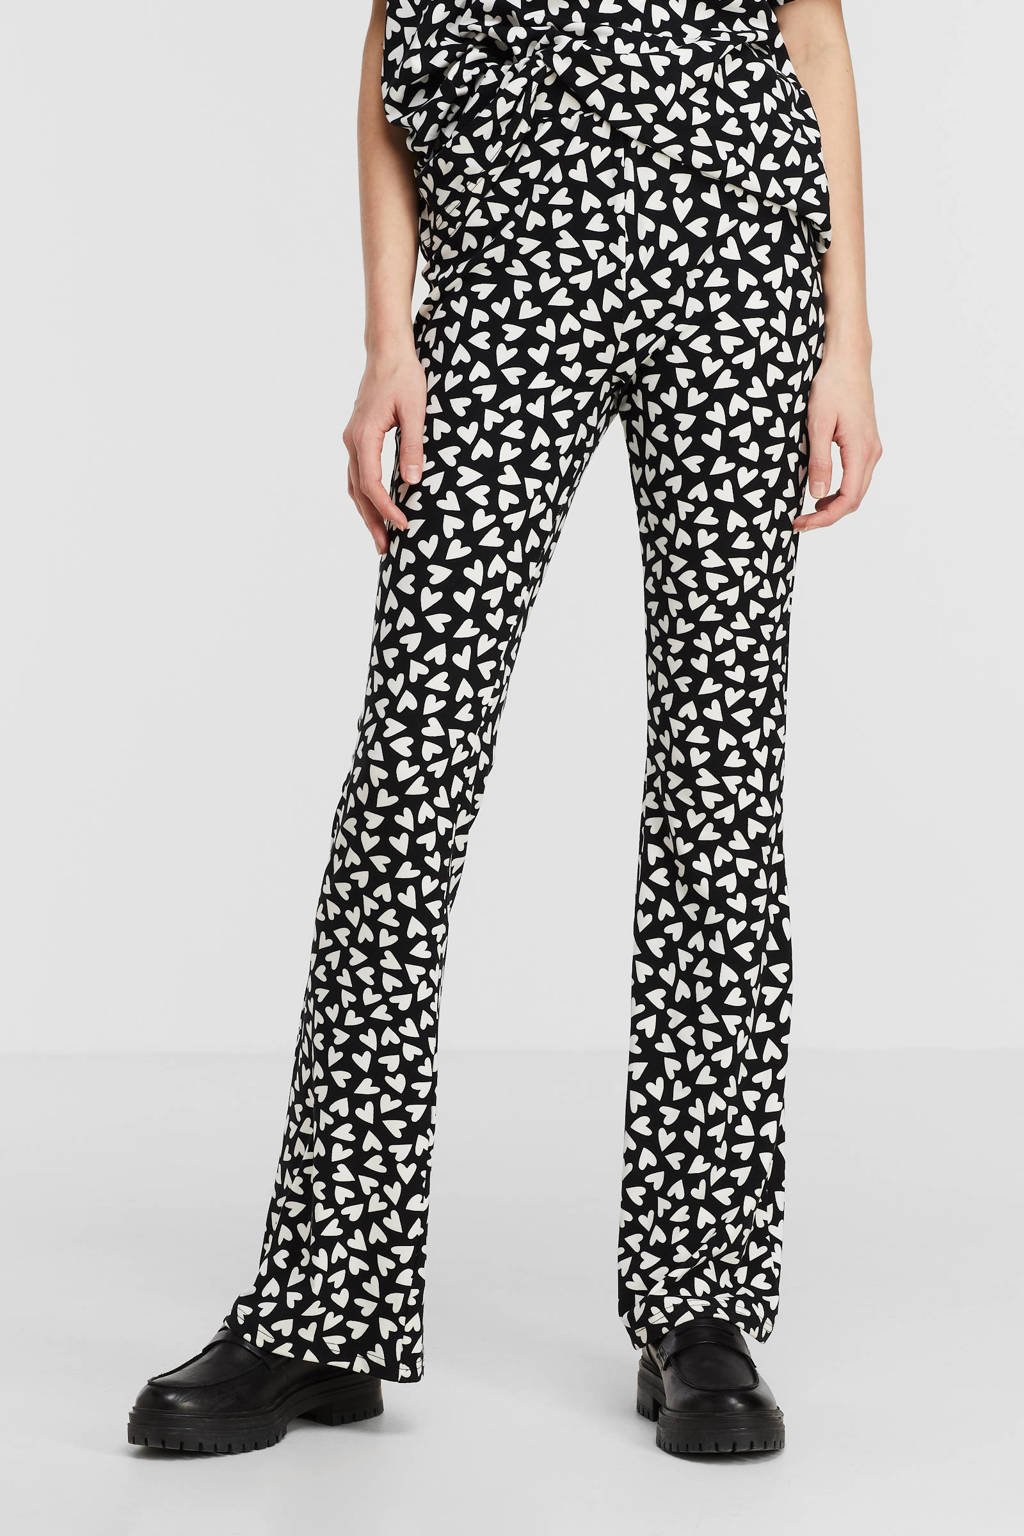 Zwart en witte dames Colourful Rebel high waist flared broek van polyester met elastische tailleband en hartjesprint